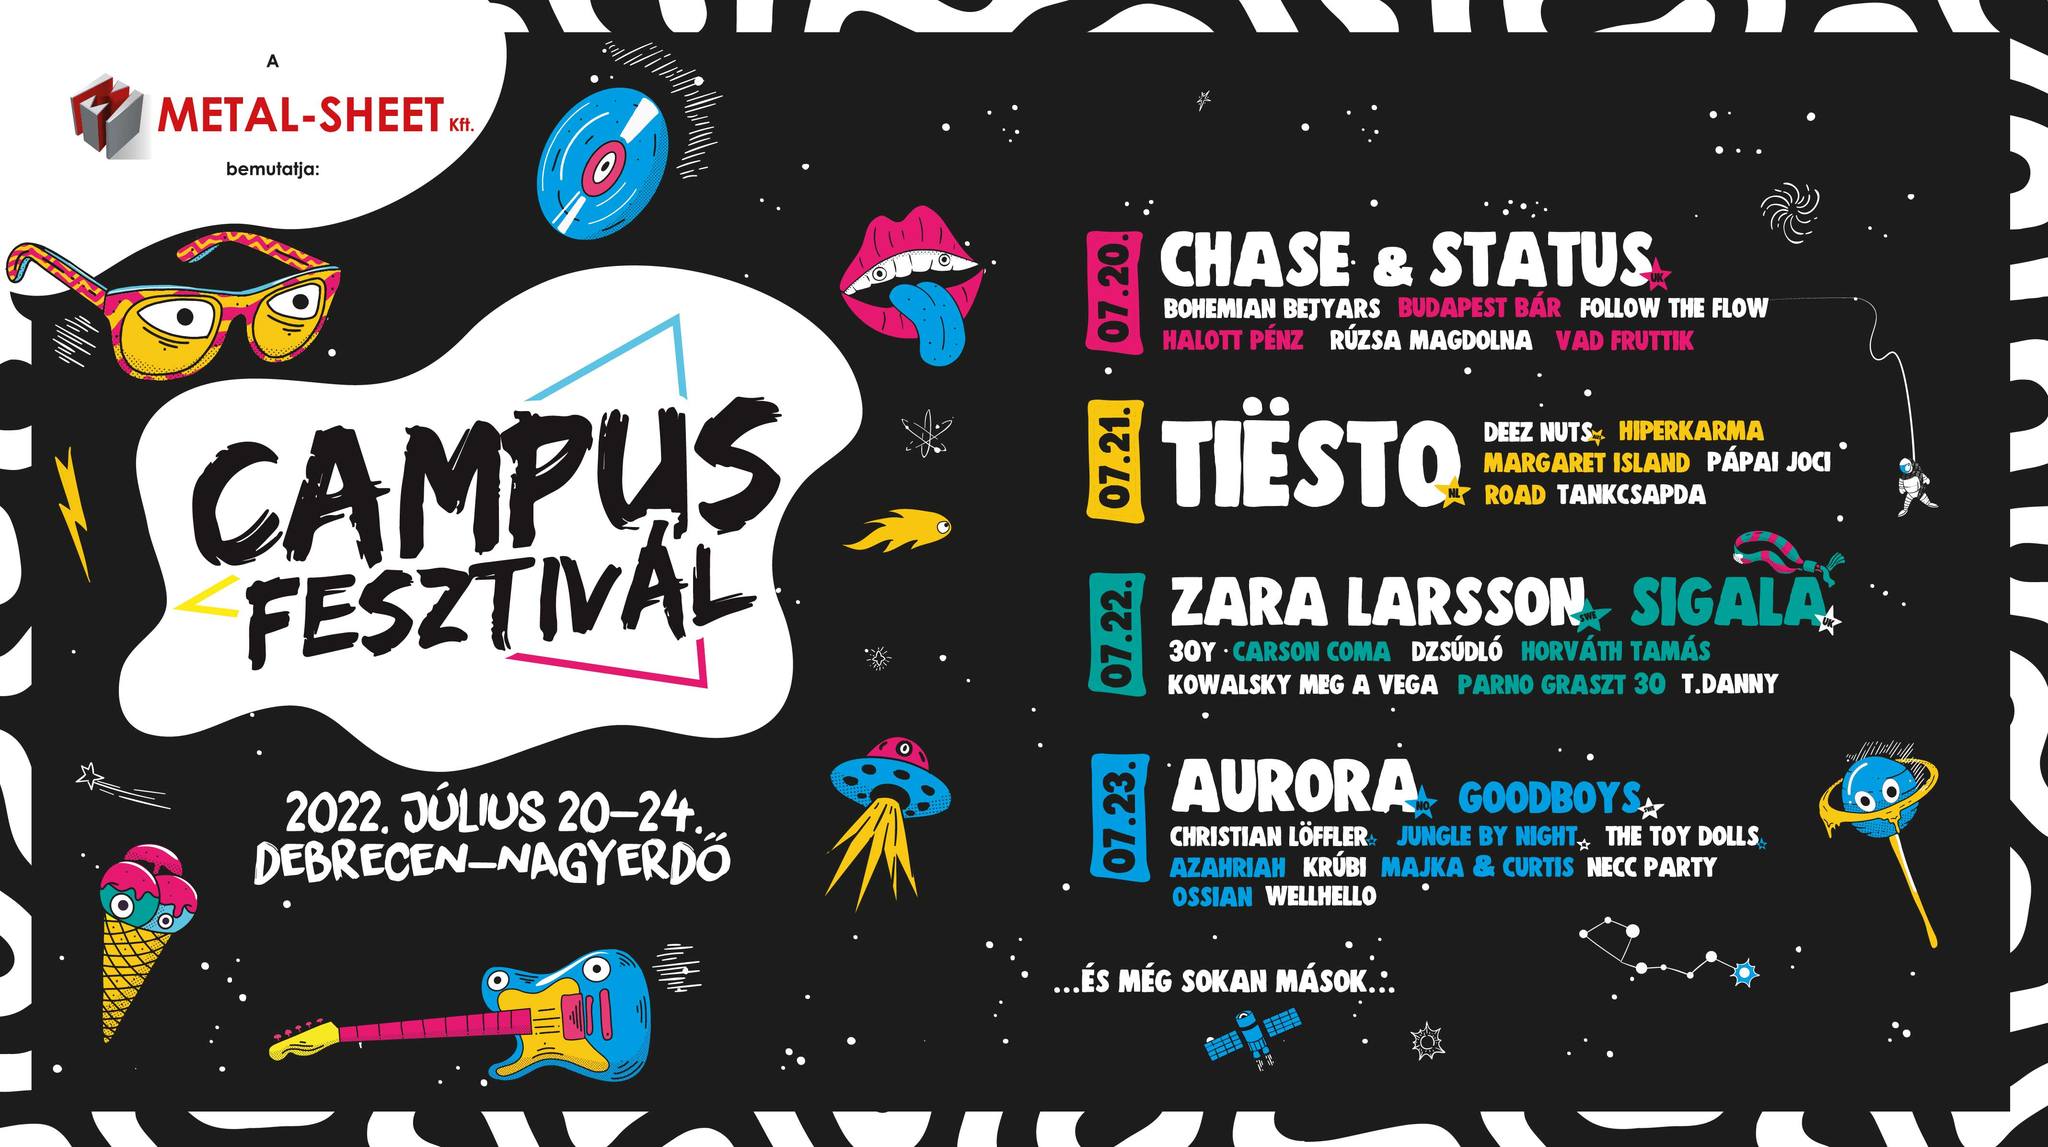 'Campus Festival' in Debrecen, 21 - 24 July